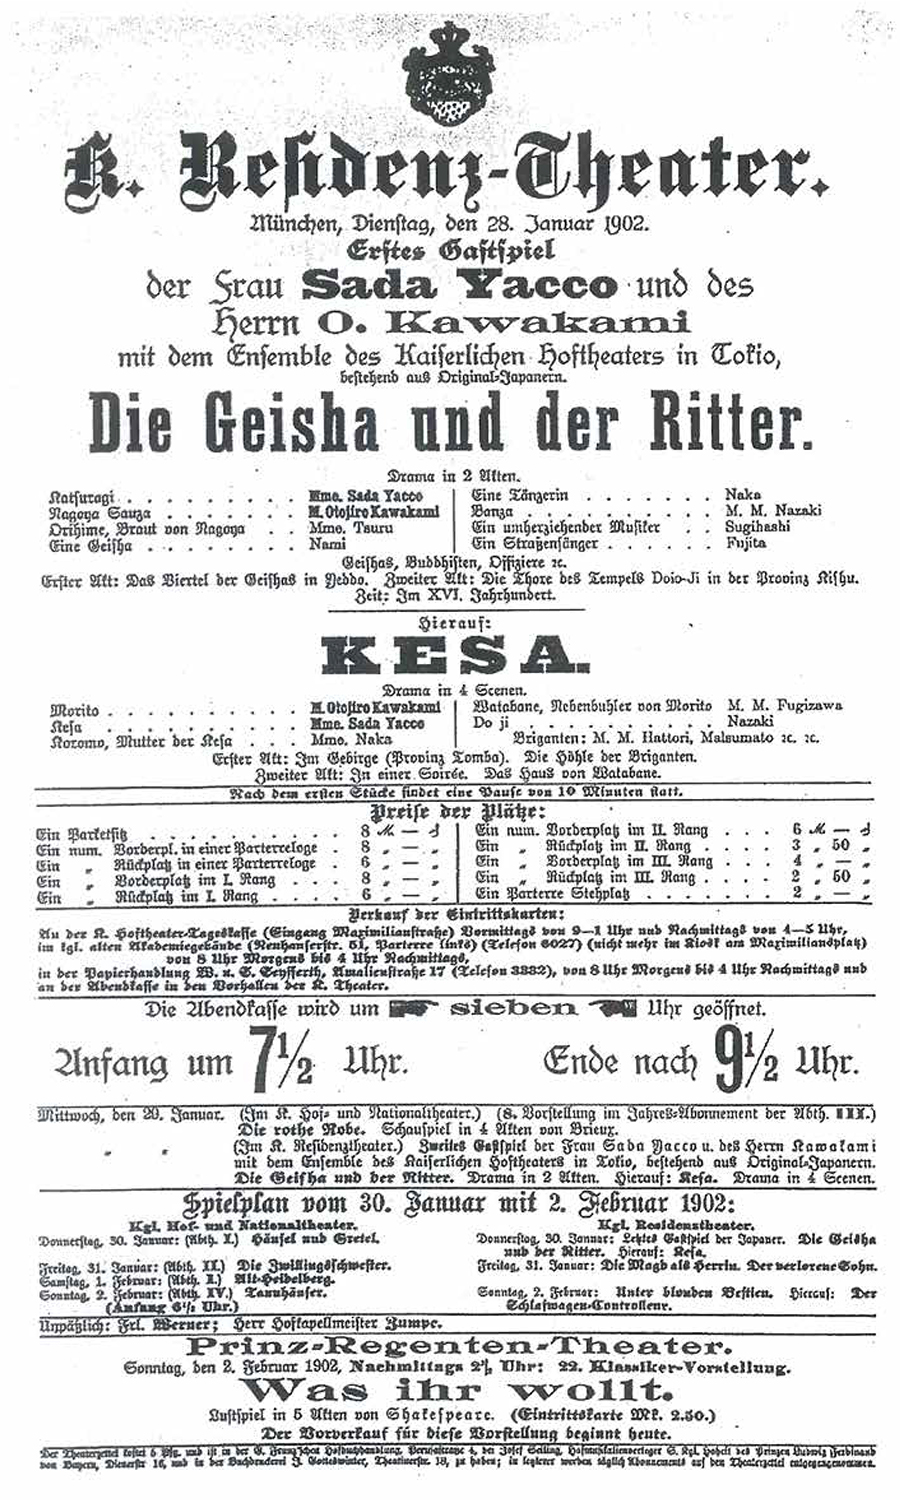 Ankündigungsprogramm, Gastspiel von Sada Yacco in München 1902 | © Bayerische Staatsbibliothek München